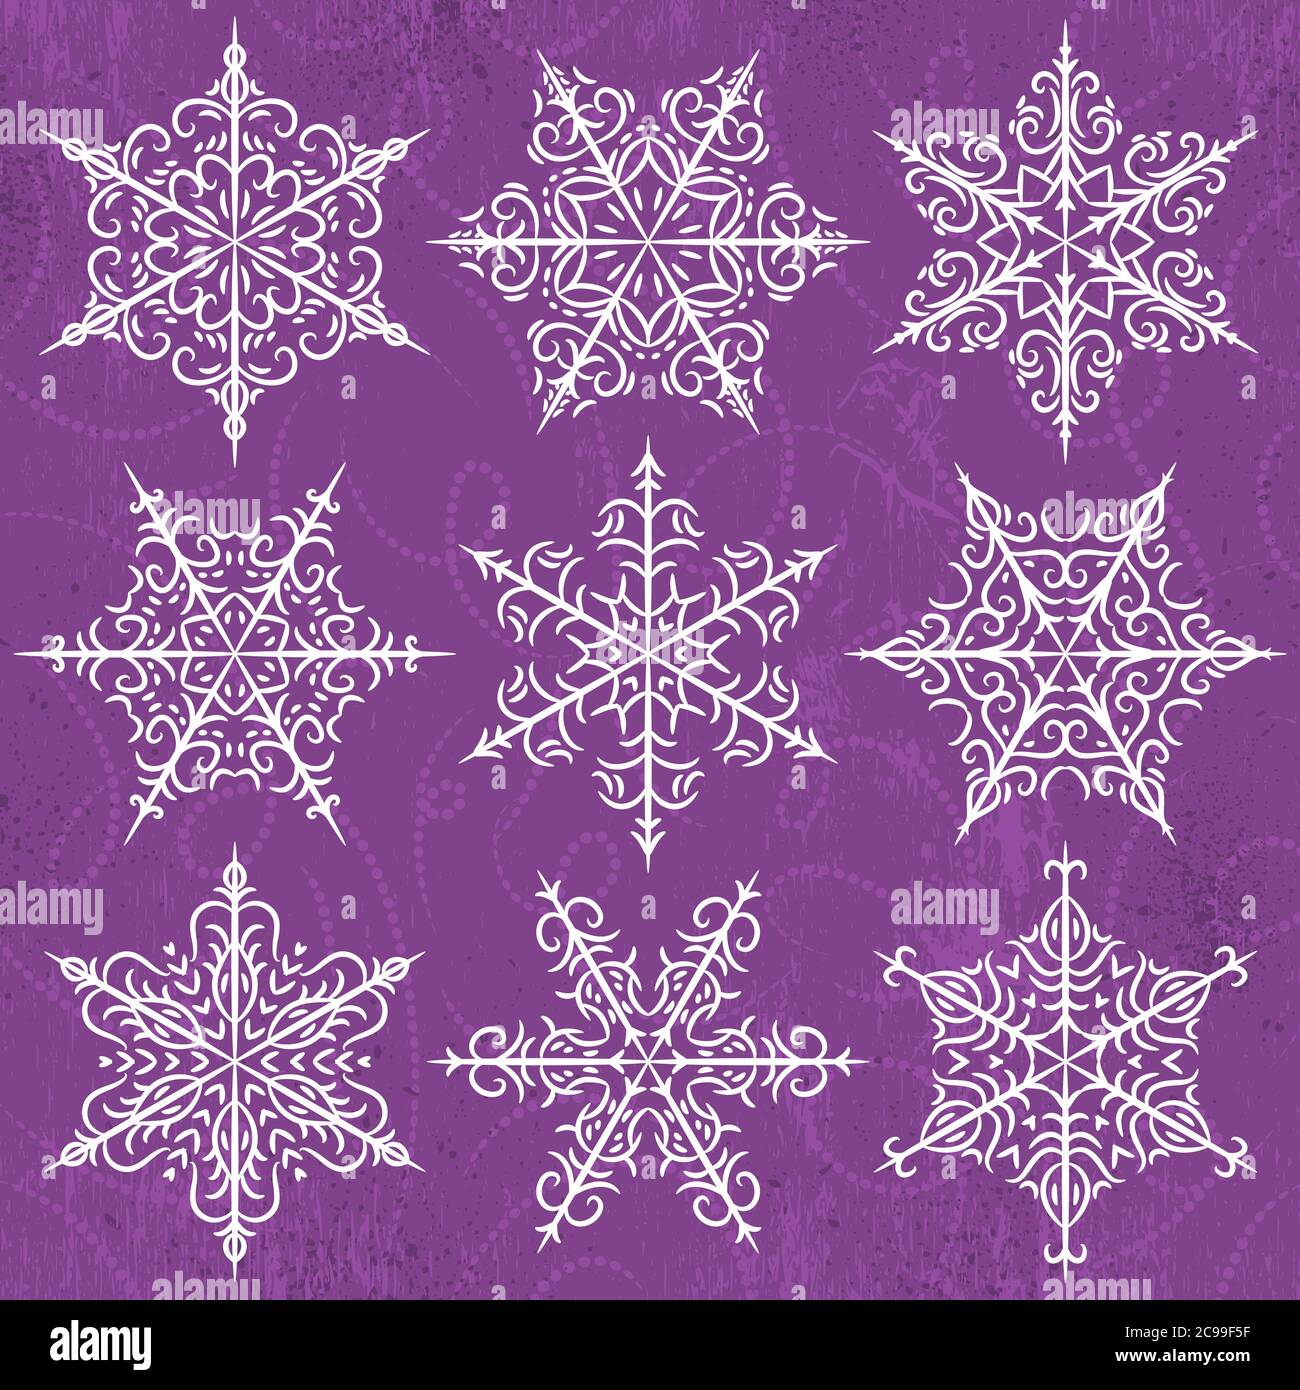 Fond violet avec flocons de neige, illustration vectorielle Banque D'Images